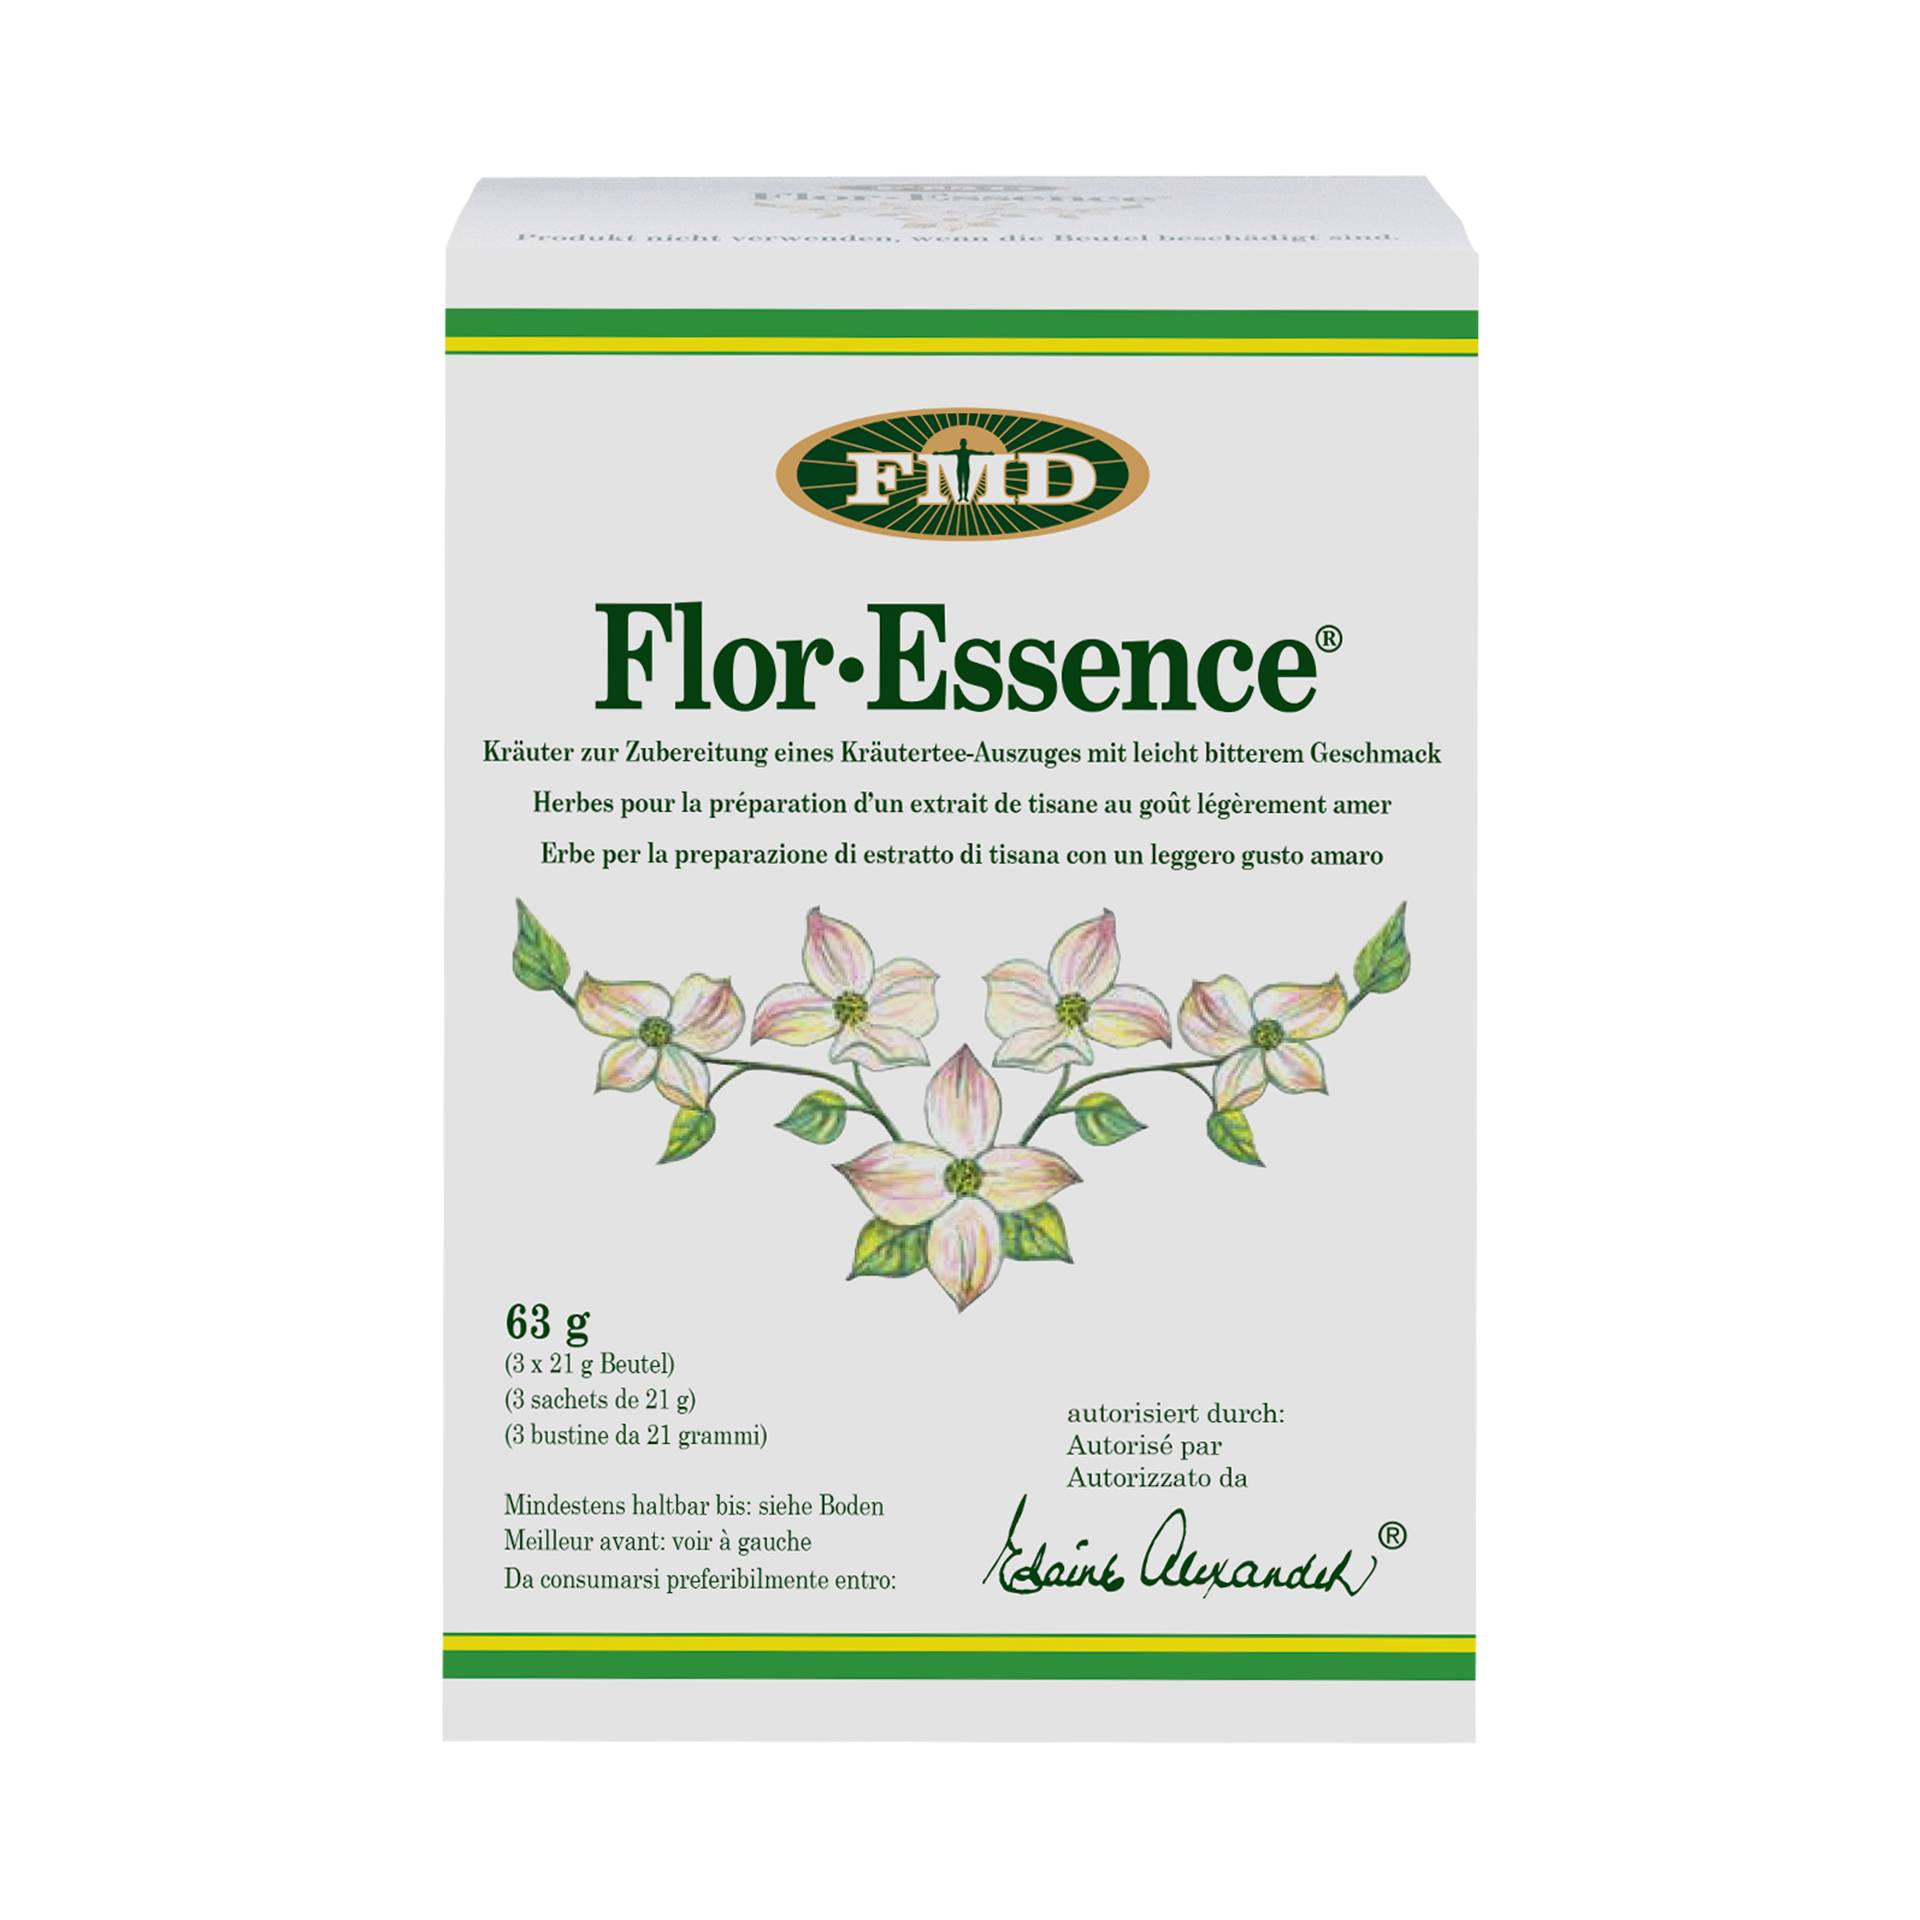 Flor Essence Kräutermischung, 3 x 21g von FMD